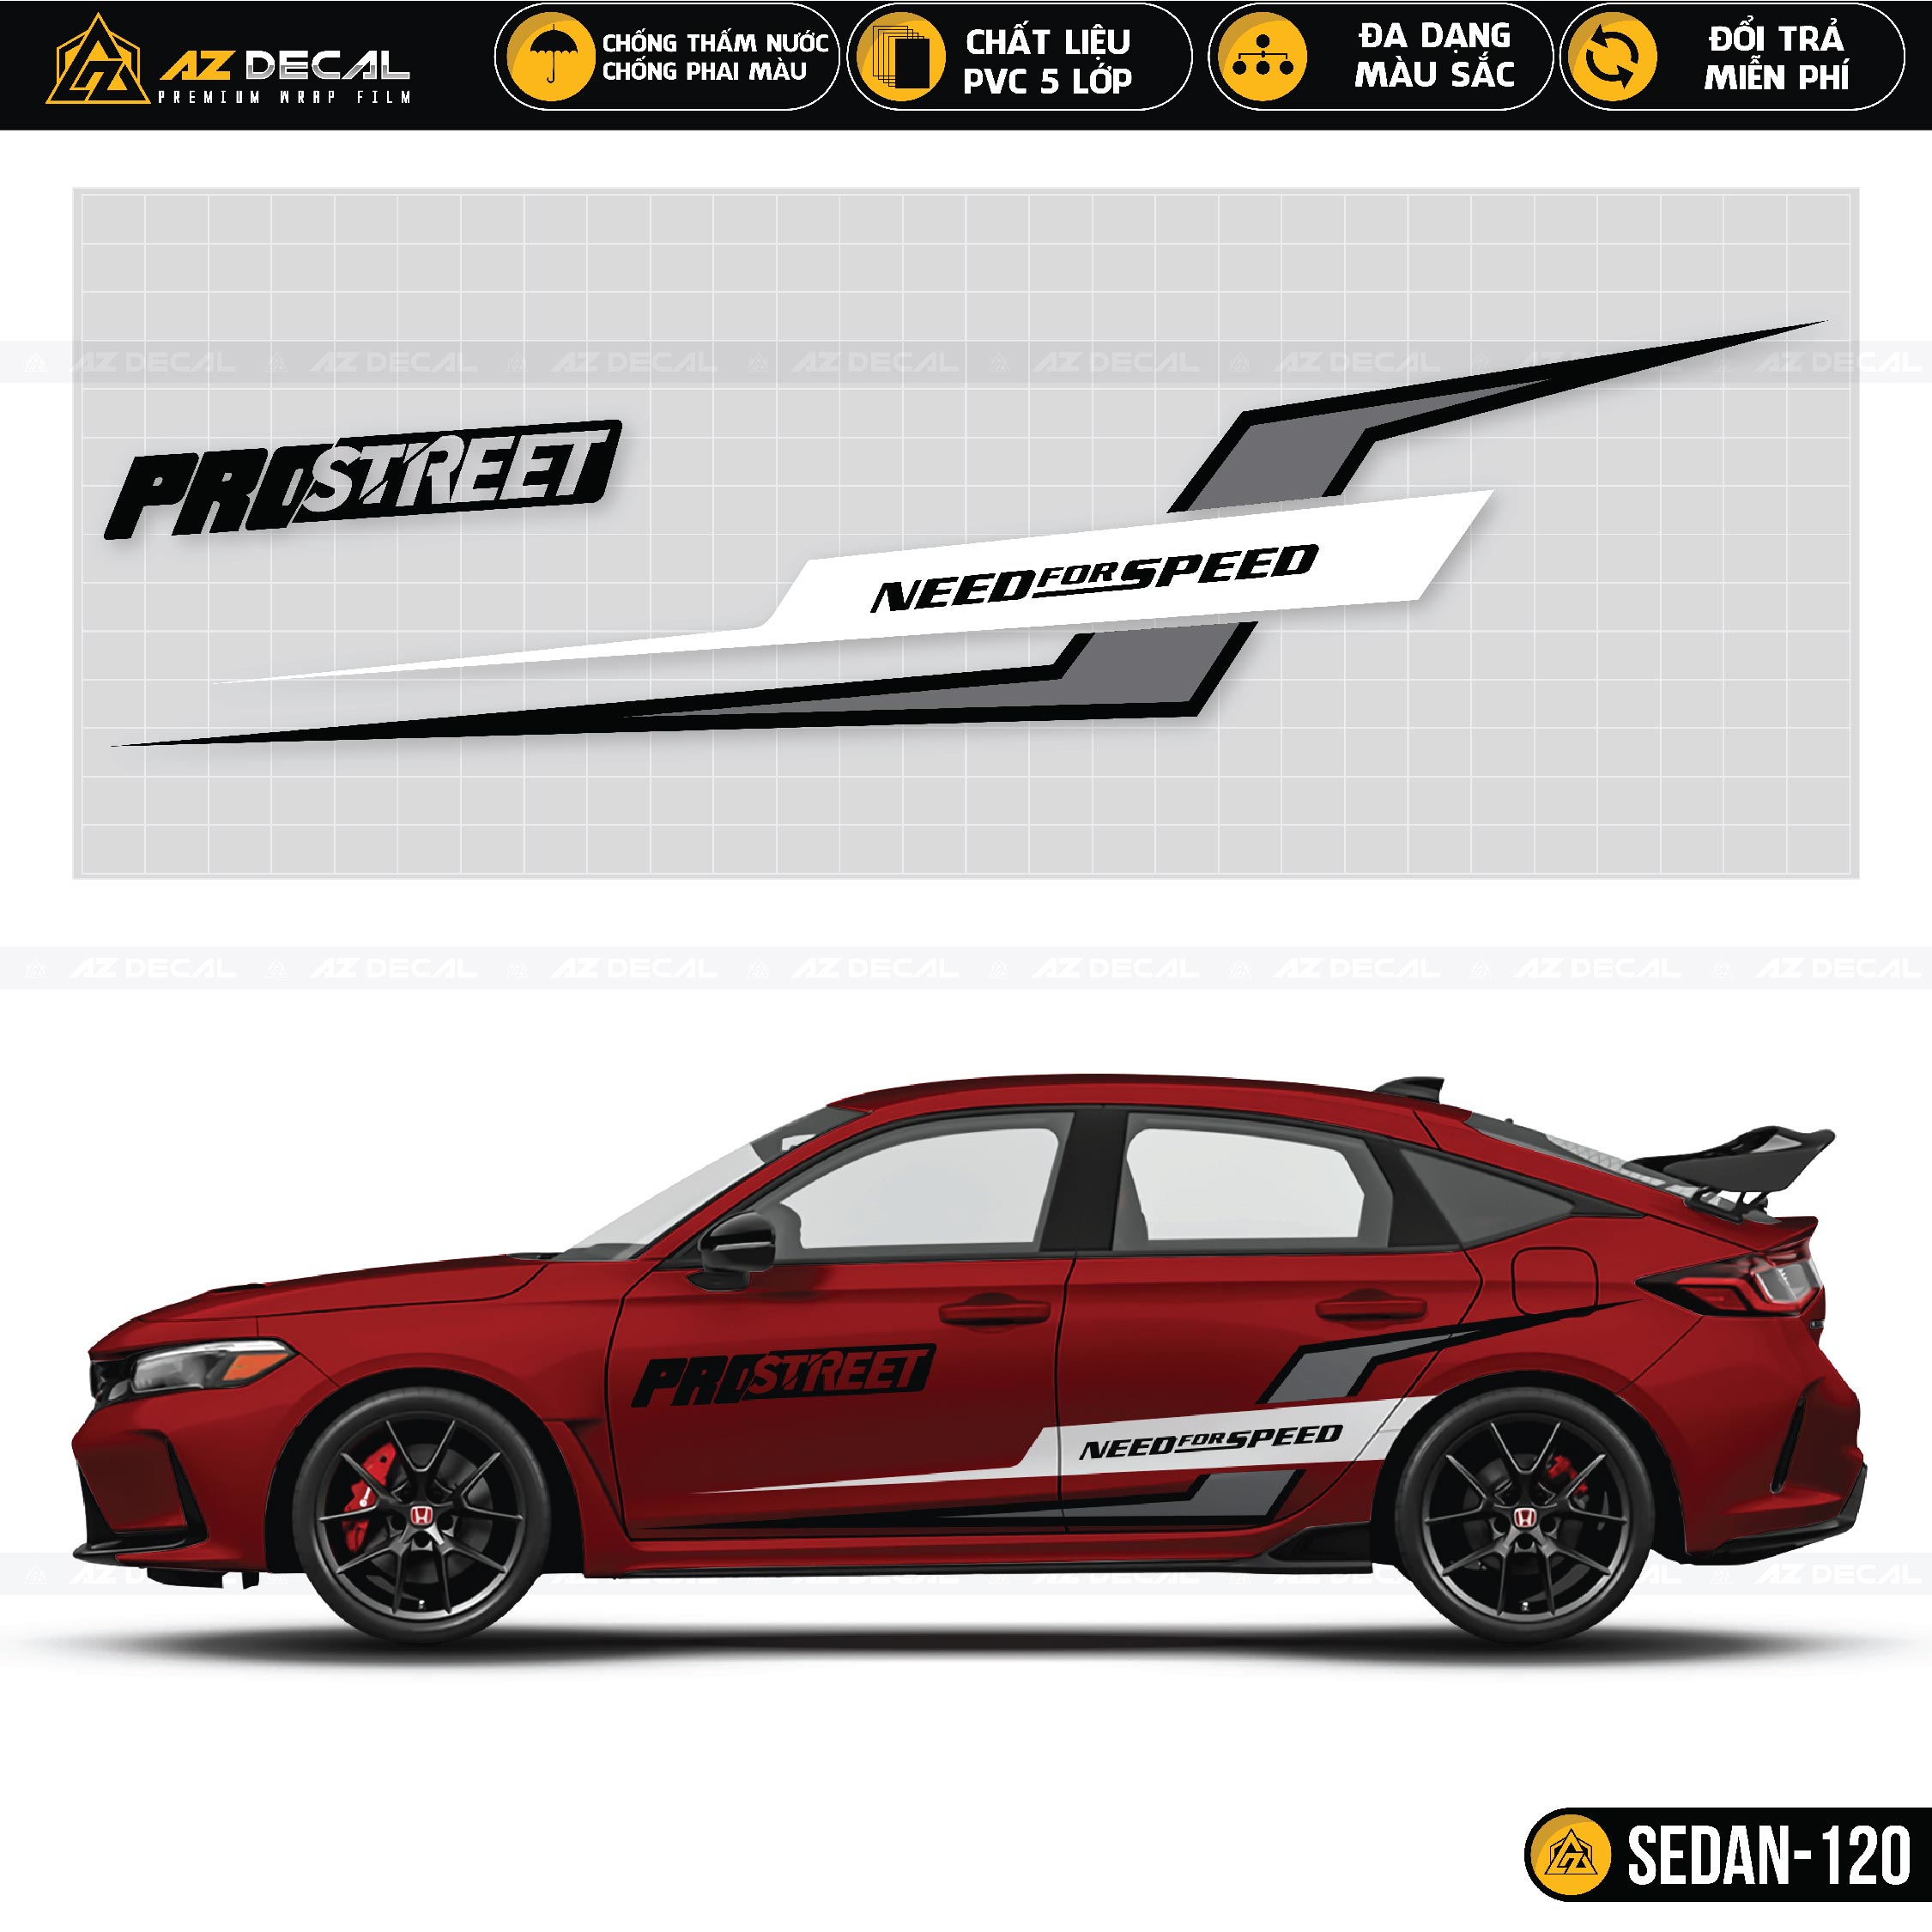 Need For Speed tem dán xe ô tô Sedan đỏ